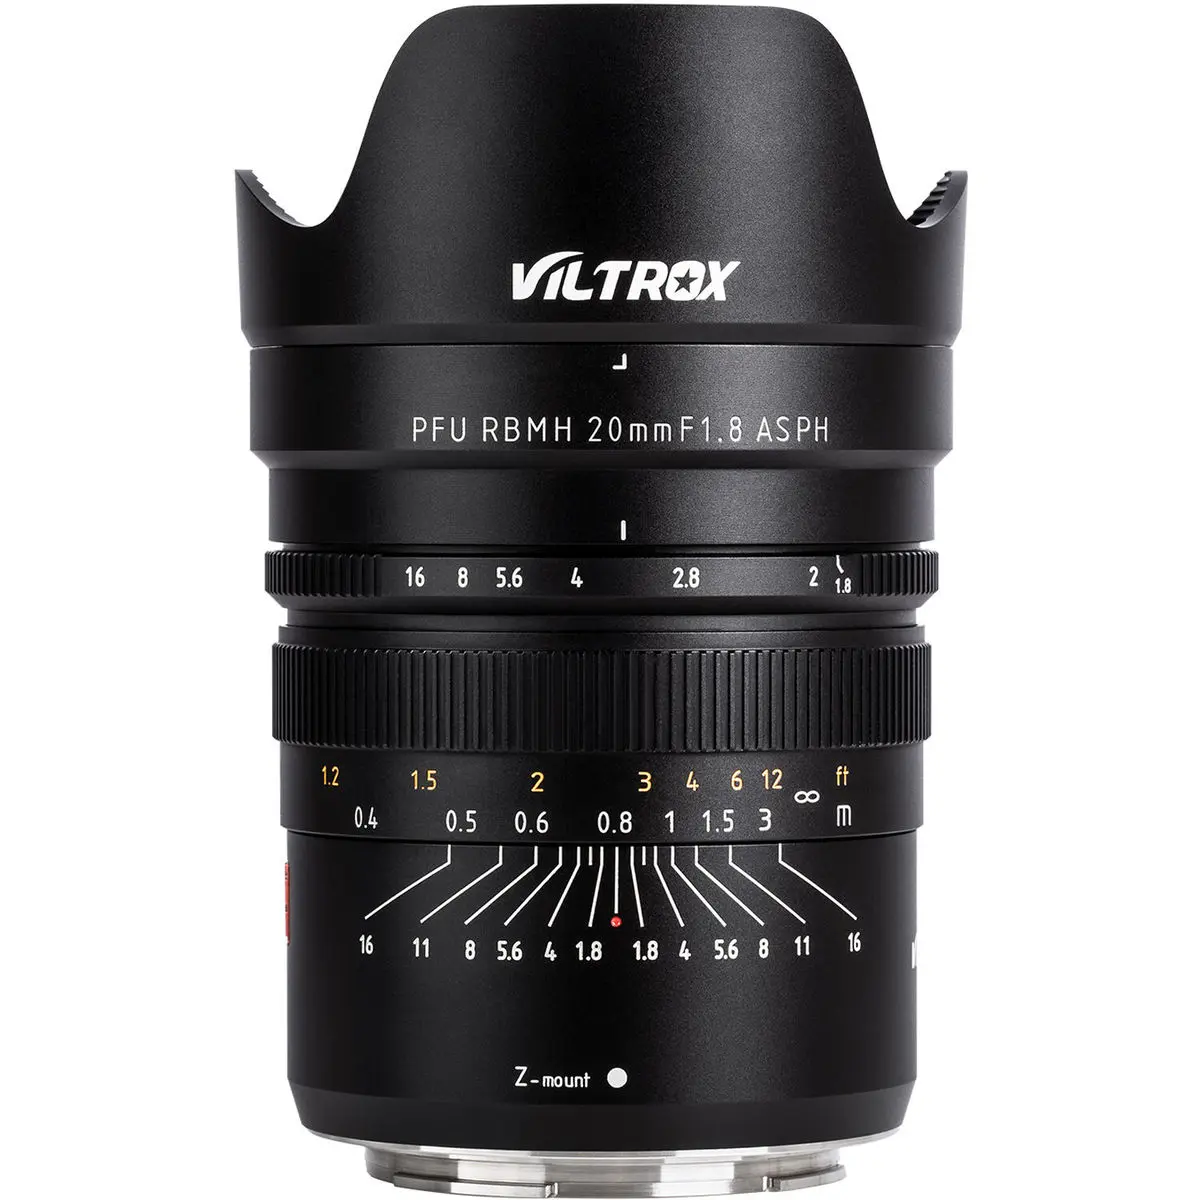 1. Viltrox PFU RBMH 20mm f/1.8 ASPH (Nikon Z)